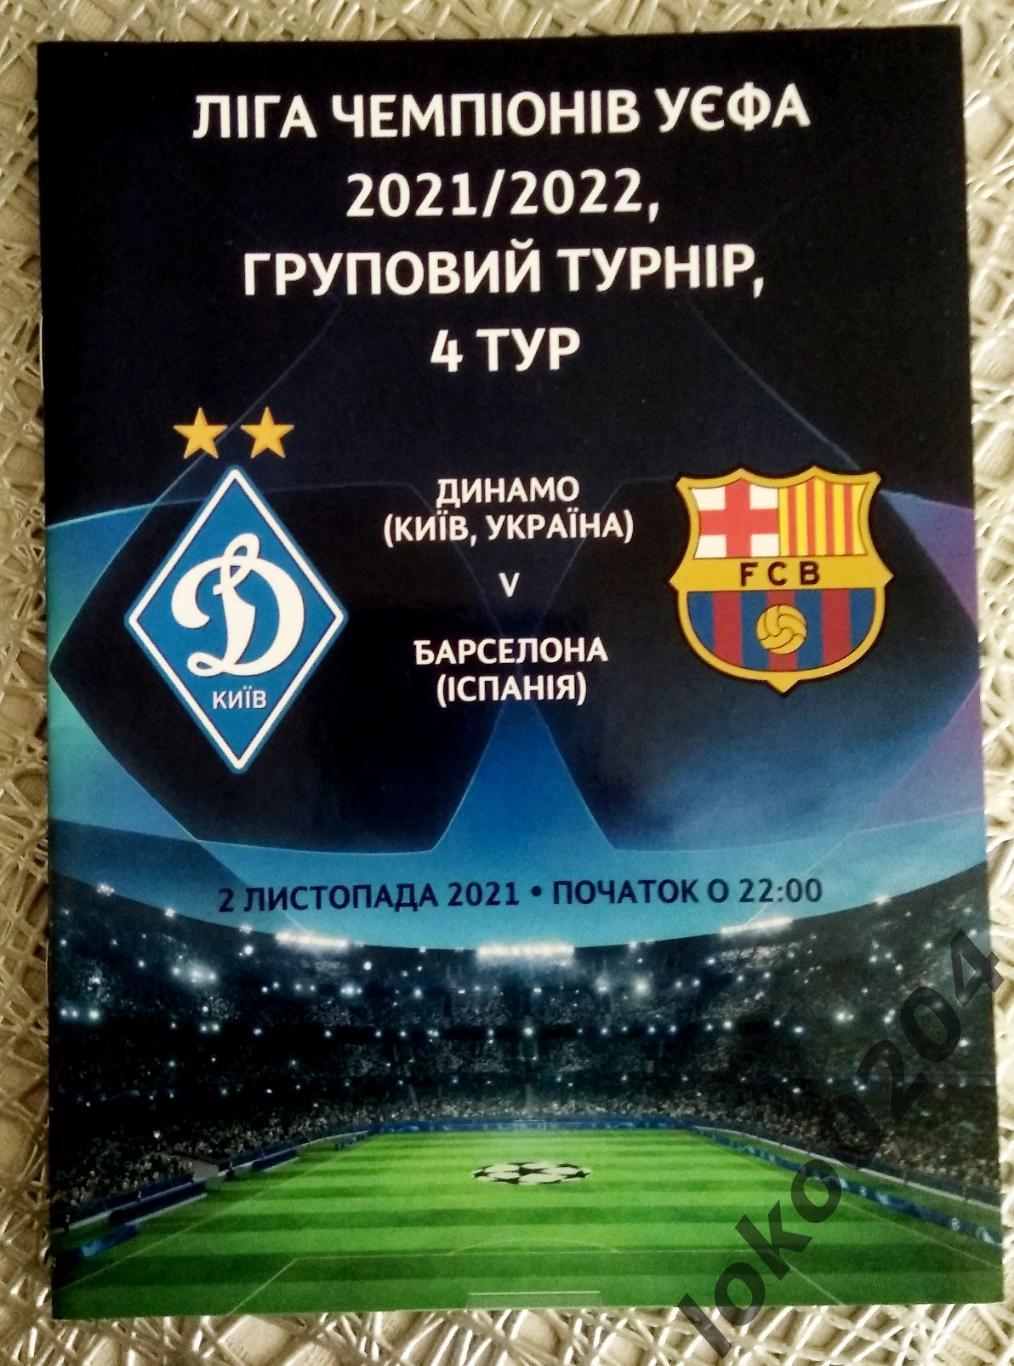 ДИНАМО Киев - БАРСЕЛОНА, 2021, Еврокубковый матч.